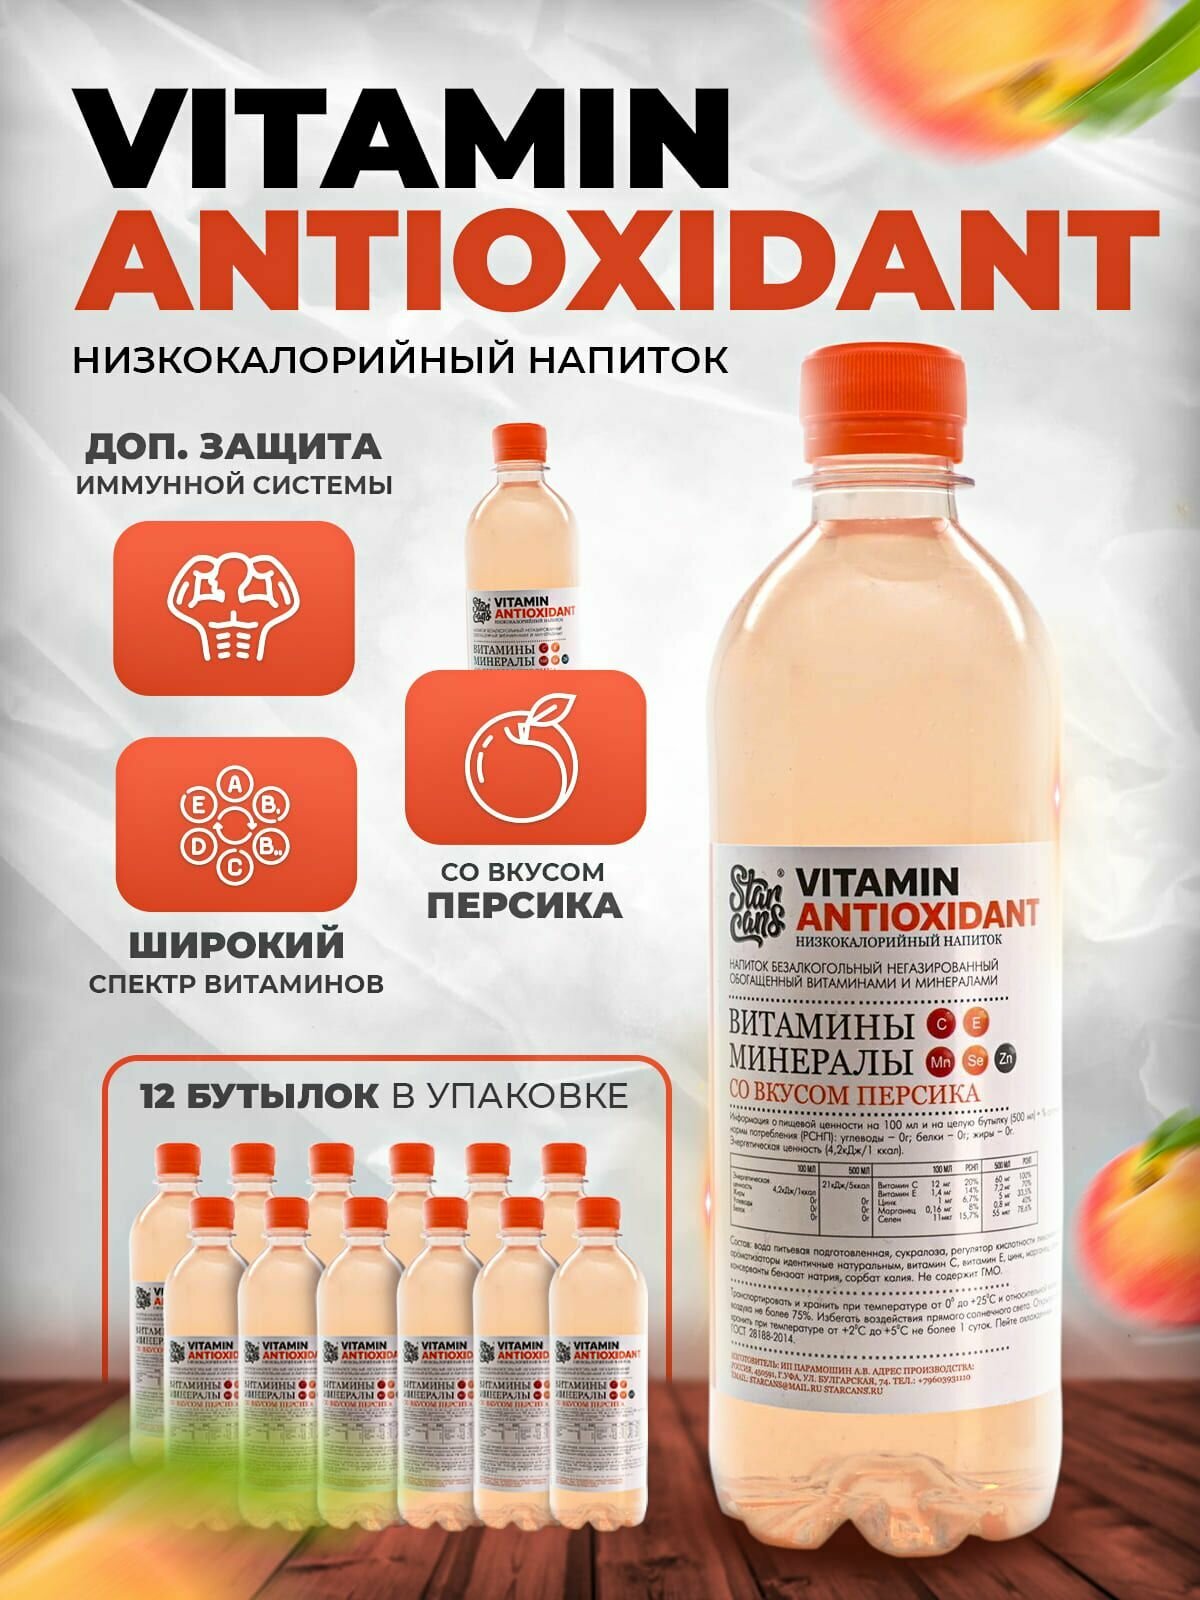 VITAMIN ANTIOXIDANT Напиток безалкогольный негазированный обогащённый витаминами и минералами со вкусом Персика